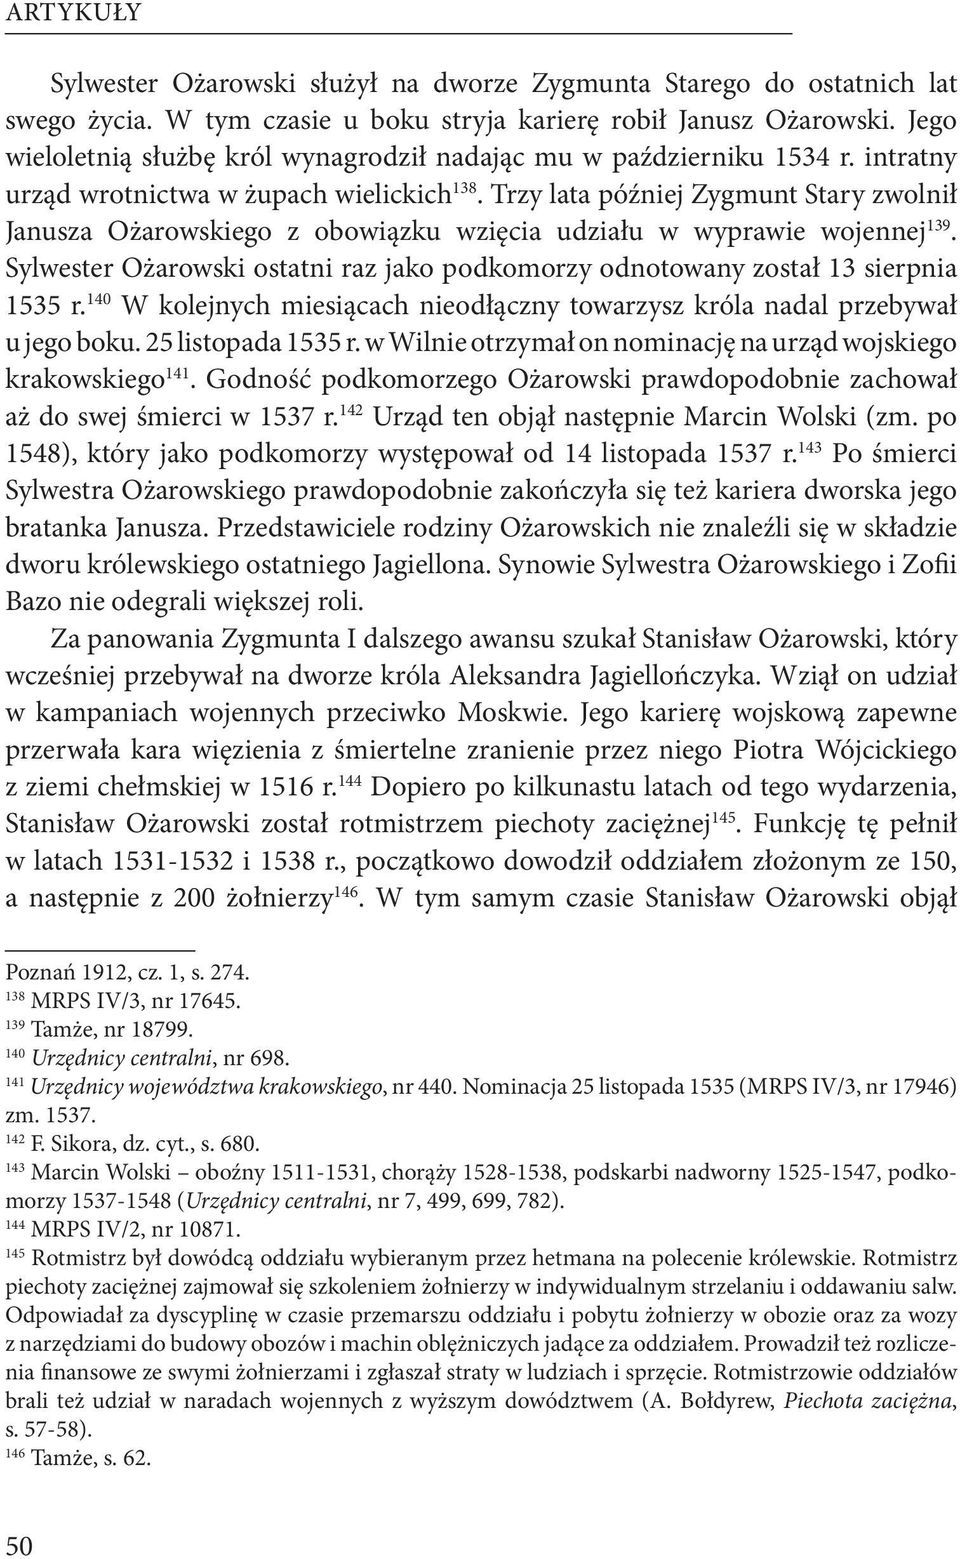 Trzy lata później Zygmunt Stary zwolnił Janusza Ożarowskiego z obowiązku wzięcia udziału w wyprawie wojennej 139. Sylwester Ożarowski ostatni raz jako podkomorzy odnotowany został 13 sierpnia 1535 r.